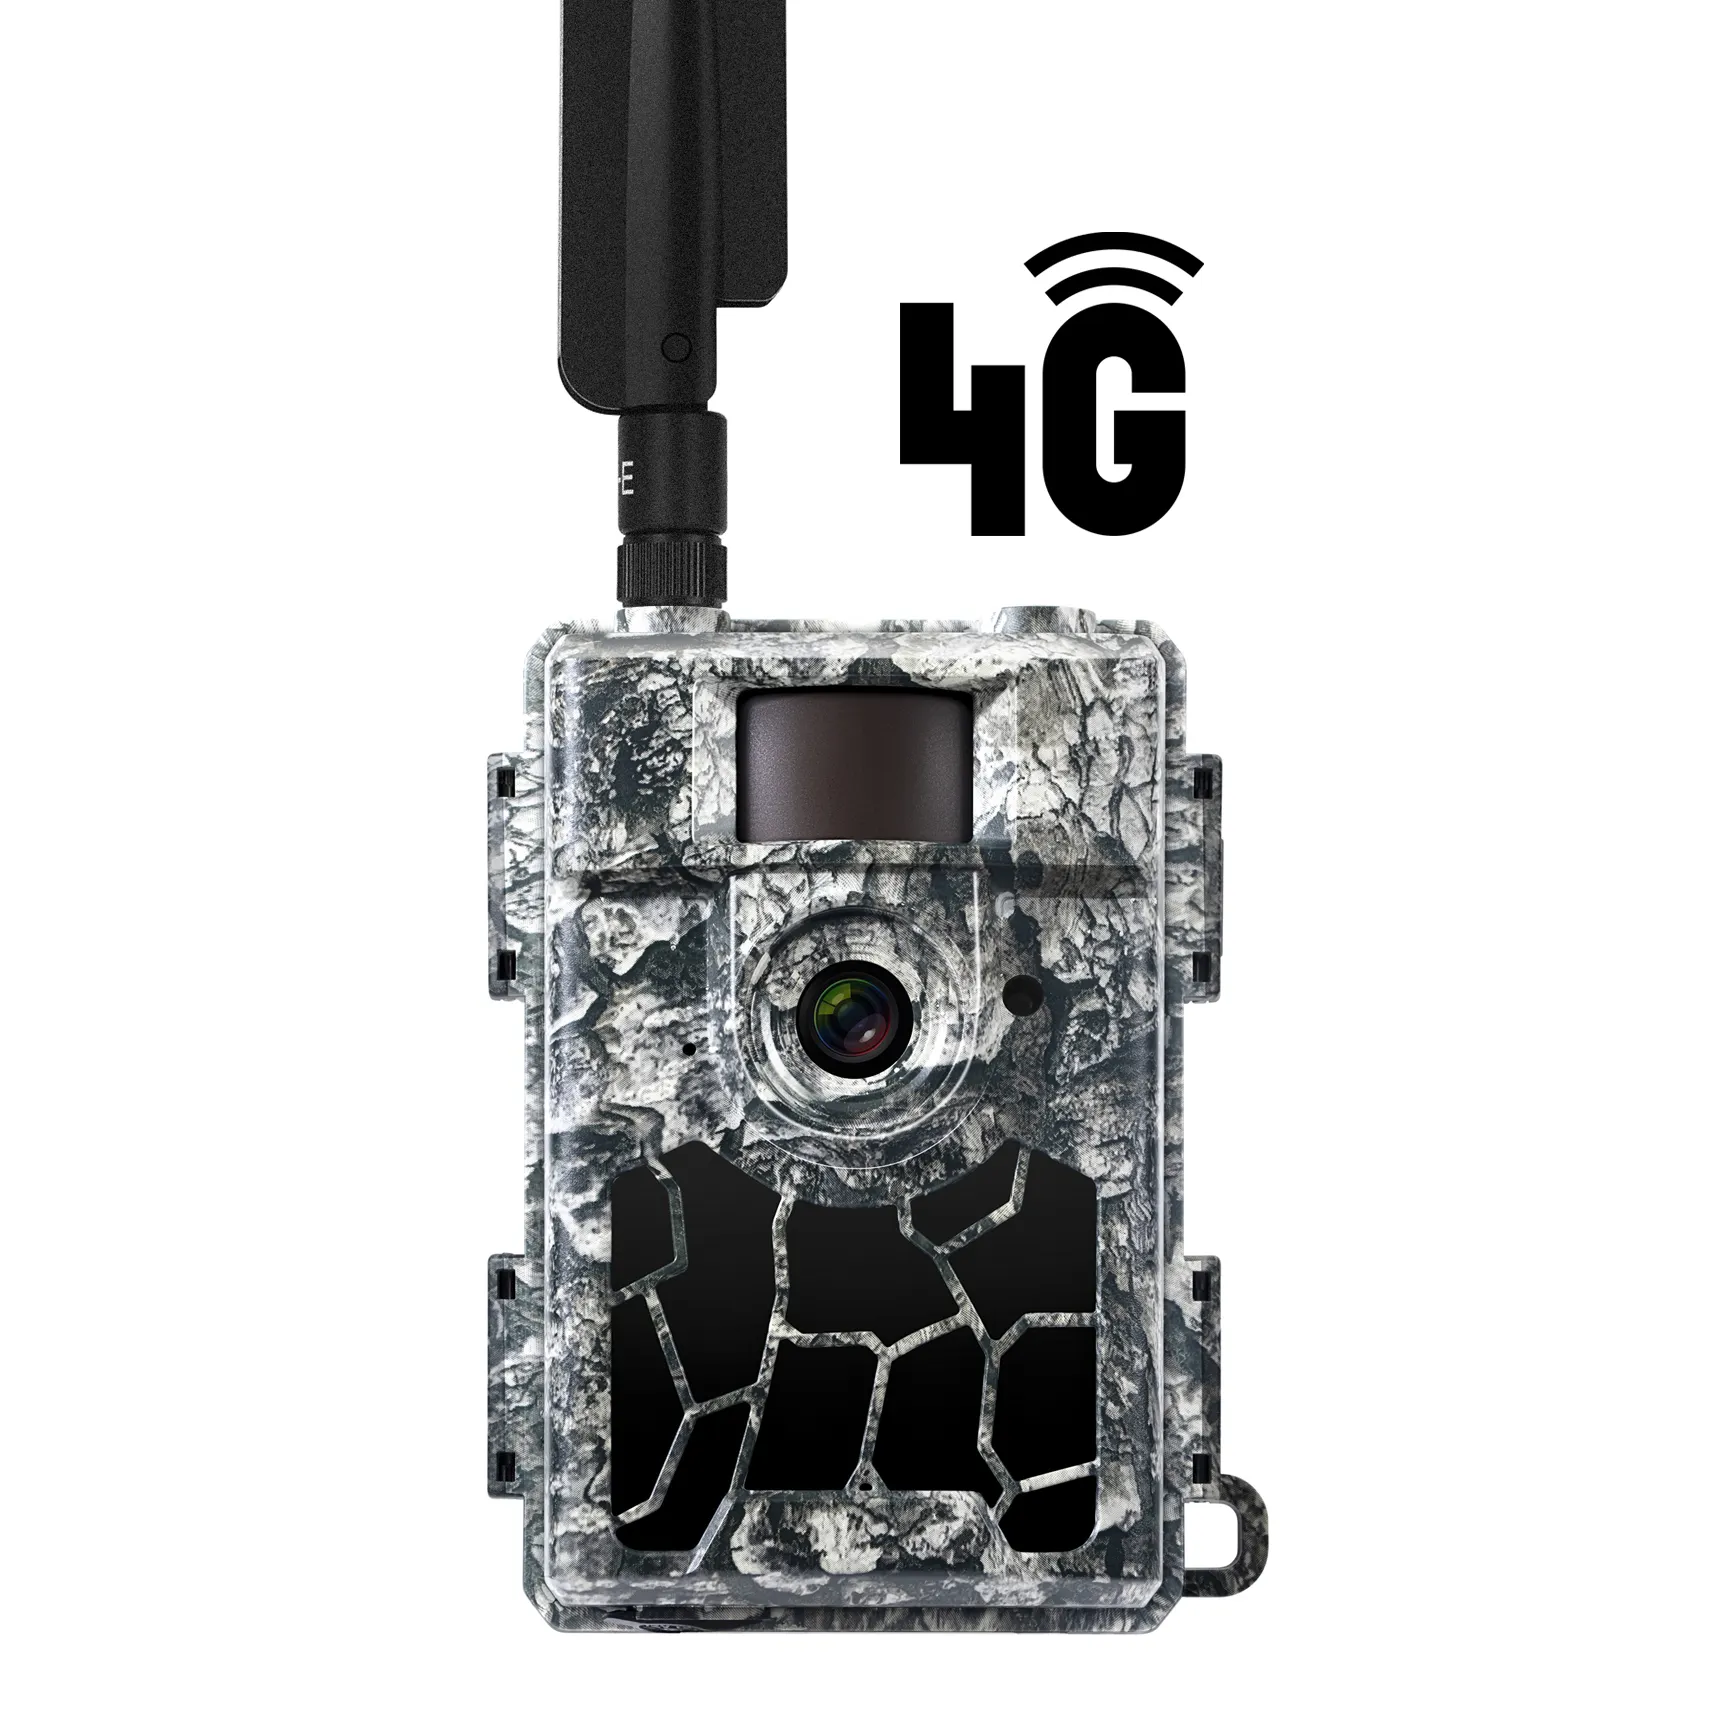 וילפין חיצוני אלחוטי 4G lte ענן אפליקציית אבטחה מצלמות משחק שביל 24mp מצלמת שביל ציד